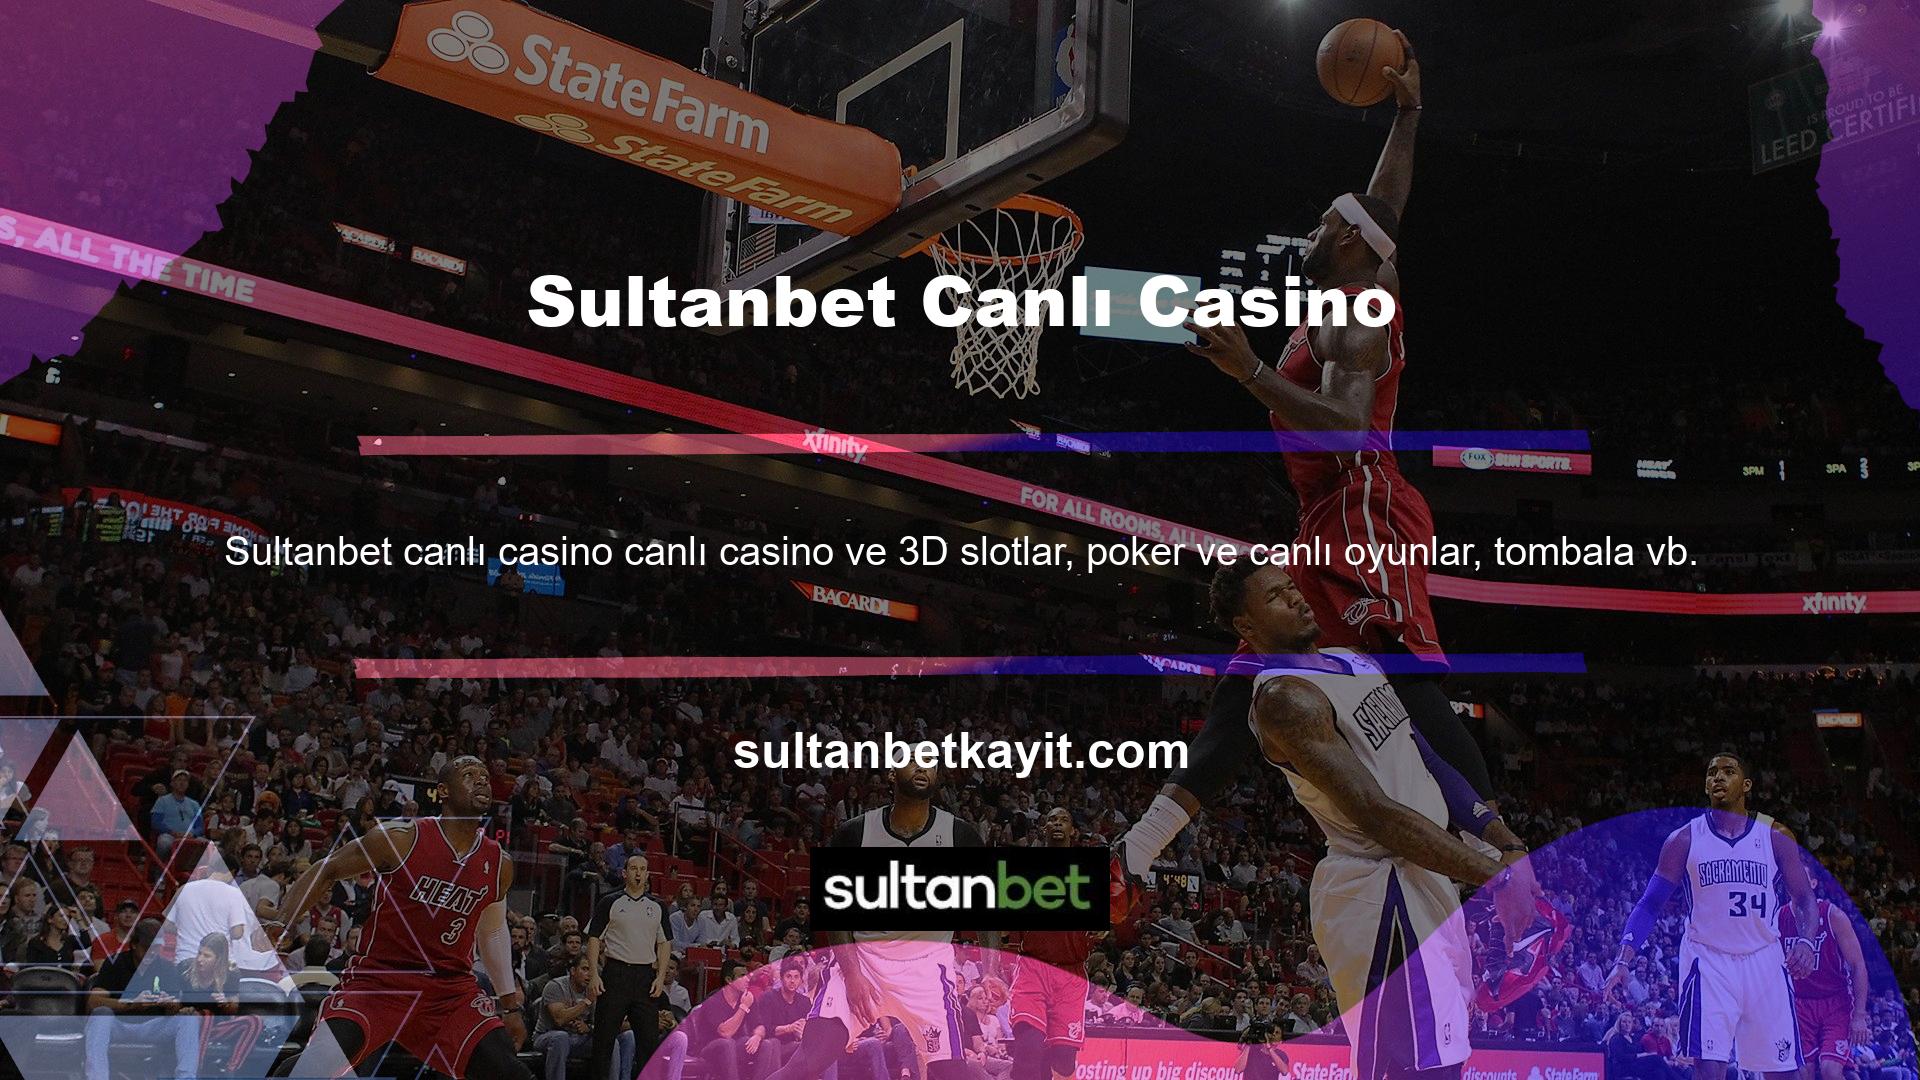 kullanıcı açıklamalarına Sultanbet Casino adına yanıt vermek